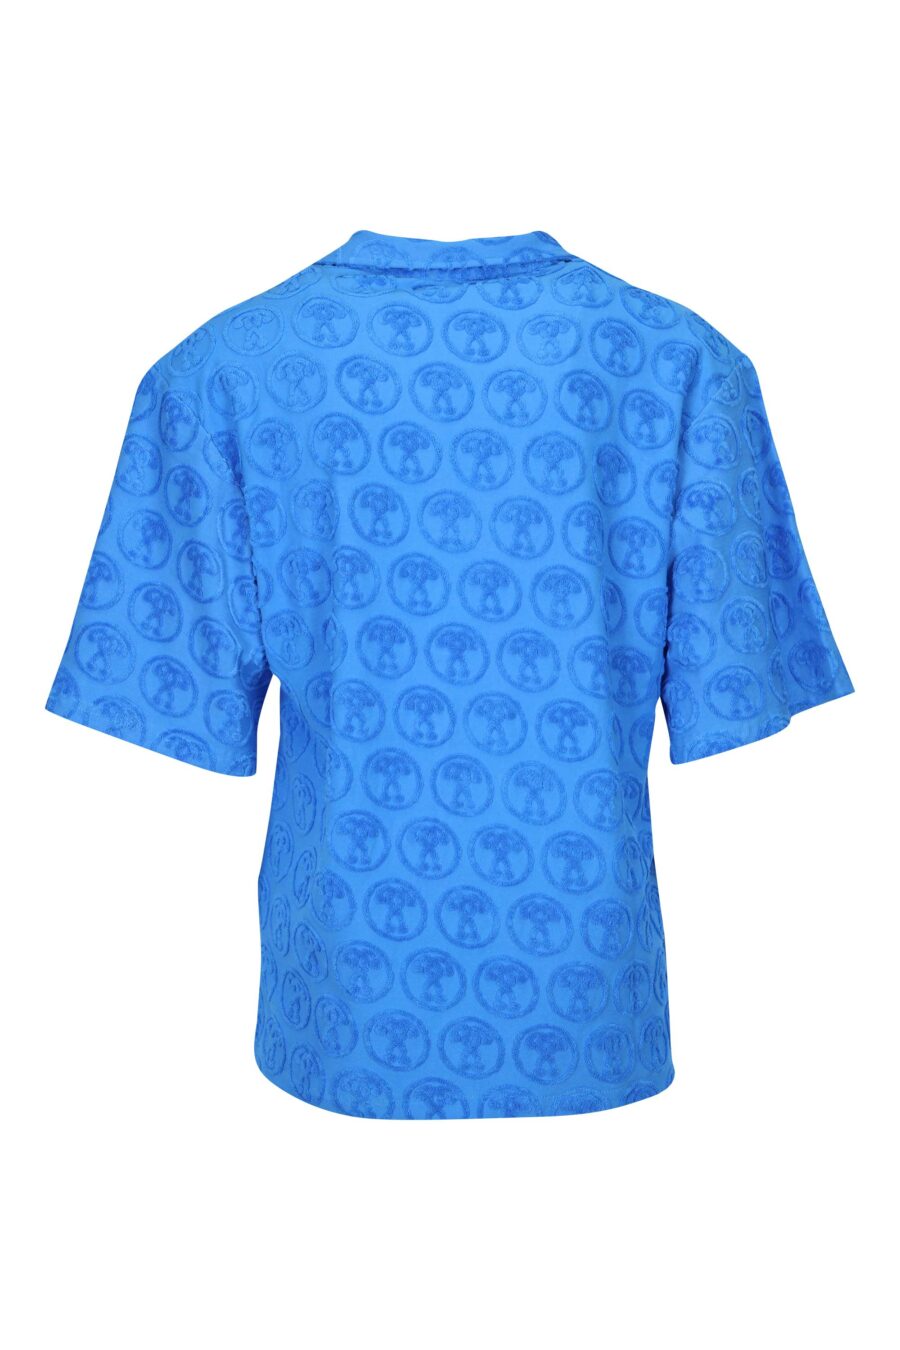 Camisa azul manga corta con "all over logo" doble pregunta - 667113670638 1